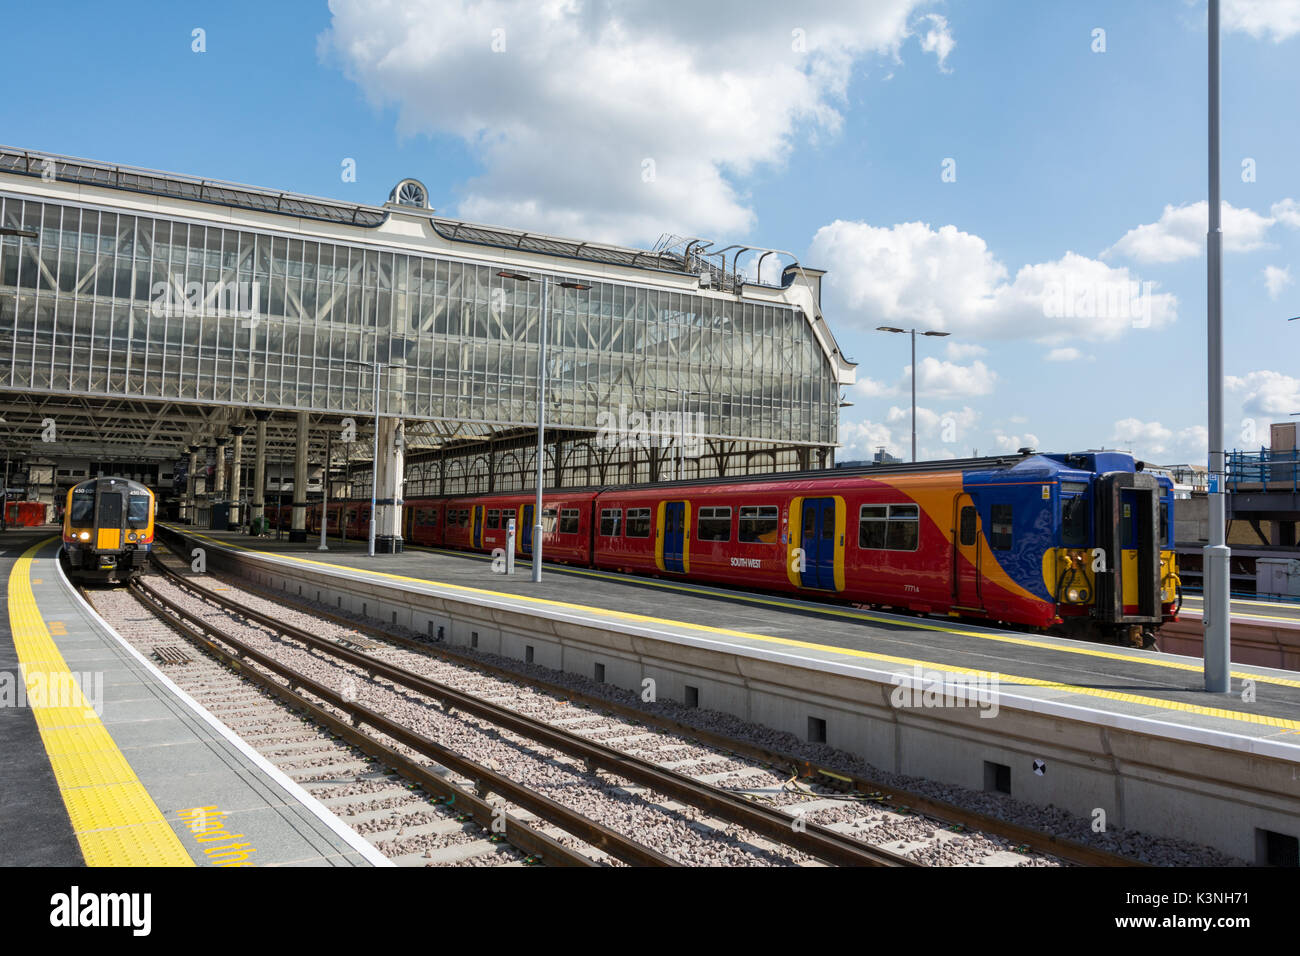 Les nouvelles plates-formes plus longues à la gare de Waterloo à Londres, Waterloo, Angleterre, Royaume-Uni Banque D'Images